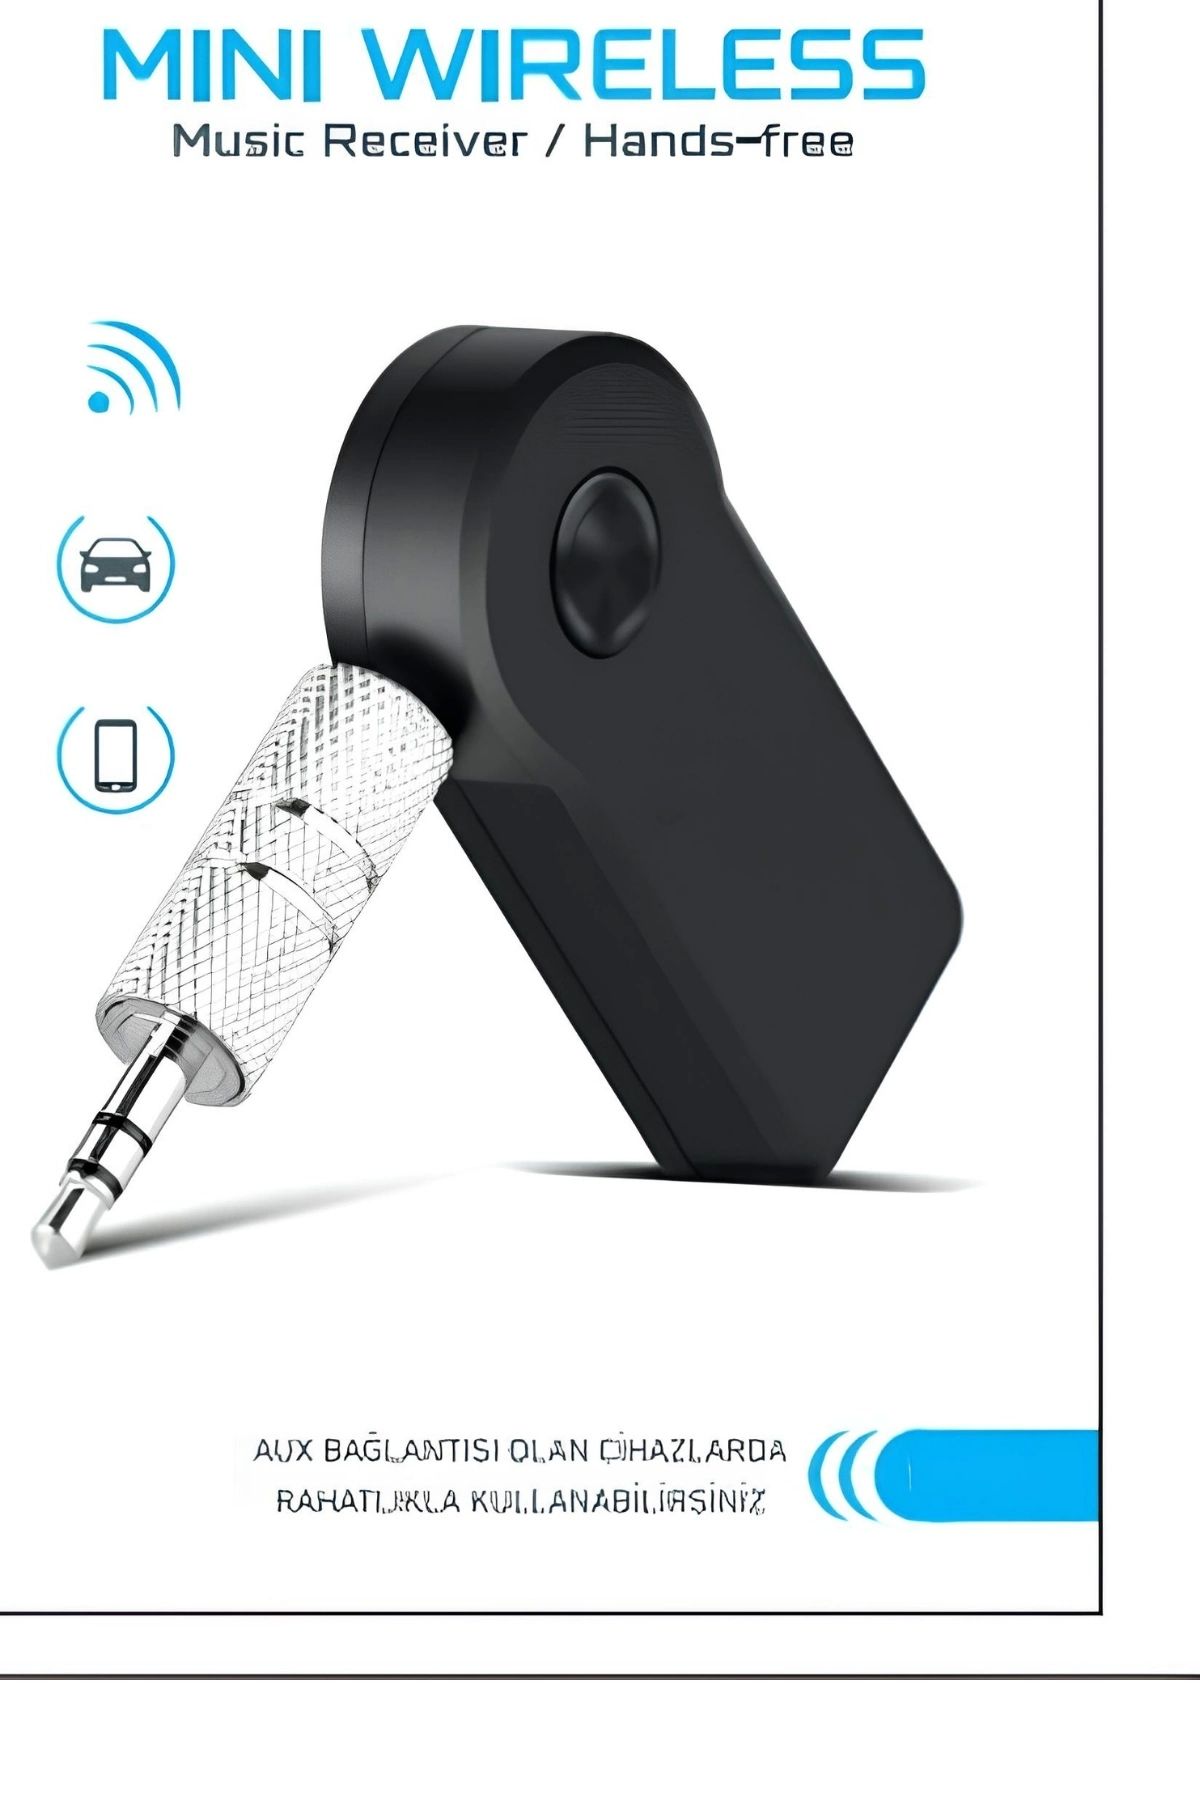 ADEKD Araç İçi Kablosuz Müzik Aktarma ve Telefon Görüşme Aparatı AUX Mini Wireless